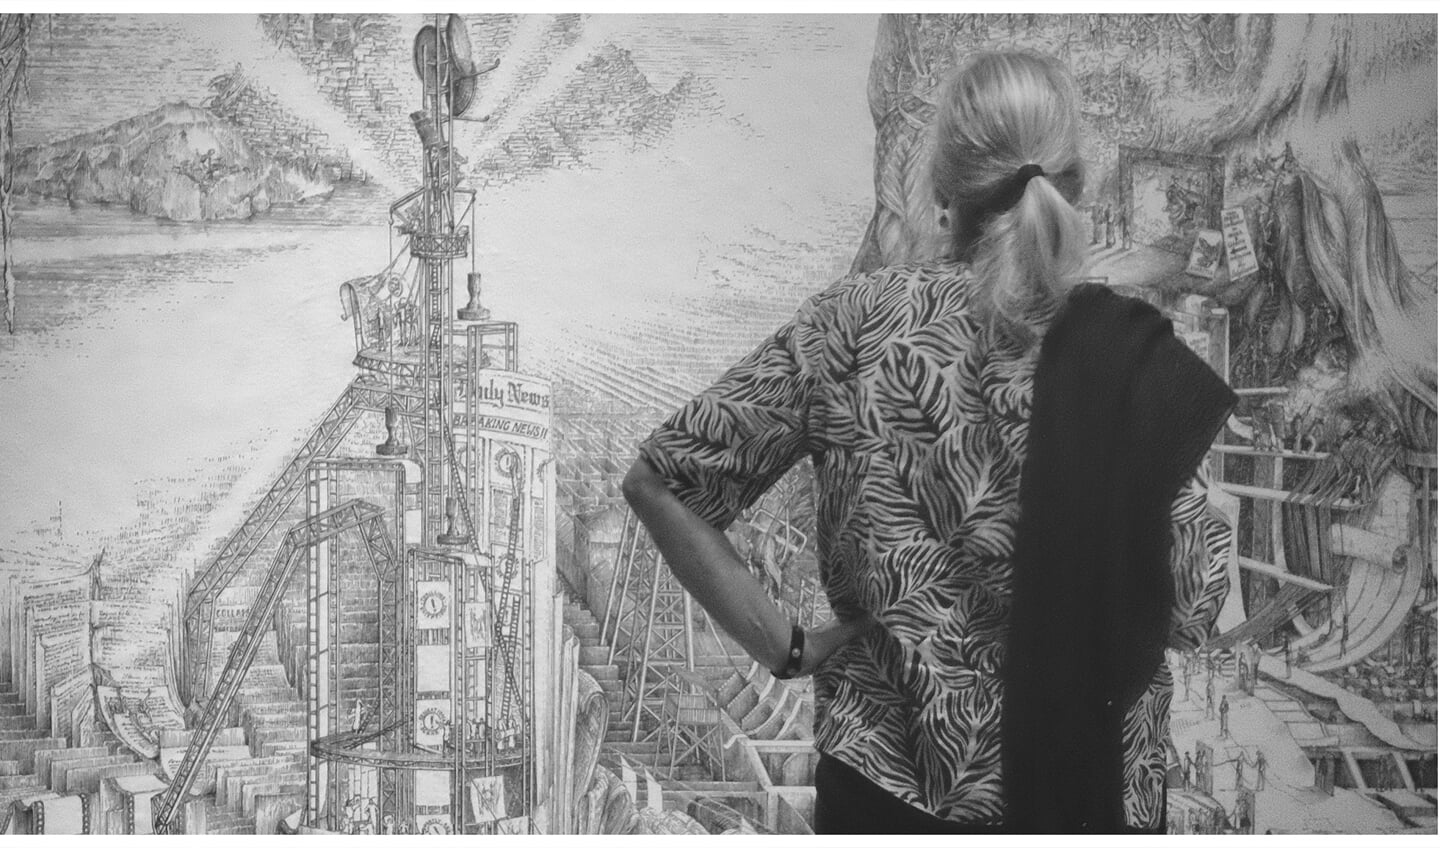 Een bezoeker bekijkt het werk van Kingma in het Rijksmuseum Twenthe. Foto: Cyril Wermers